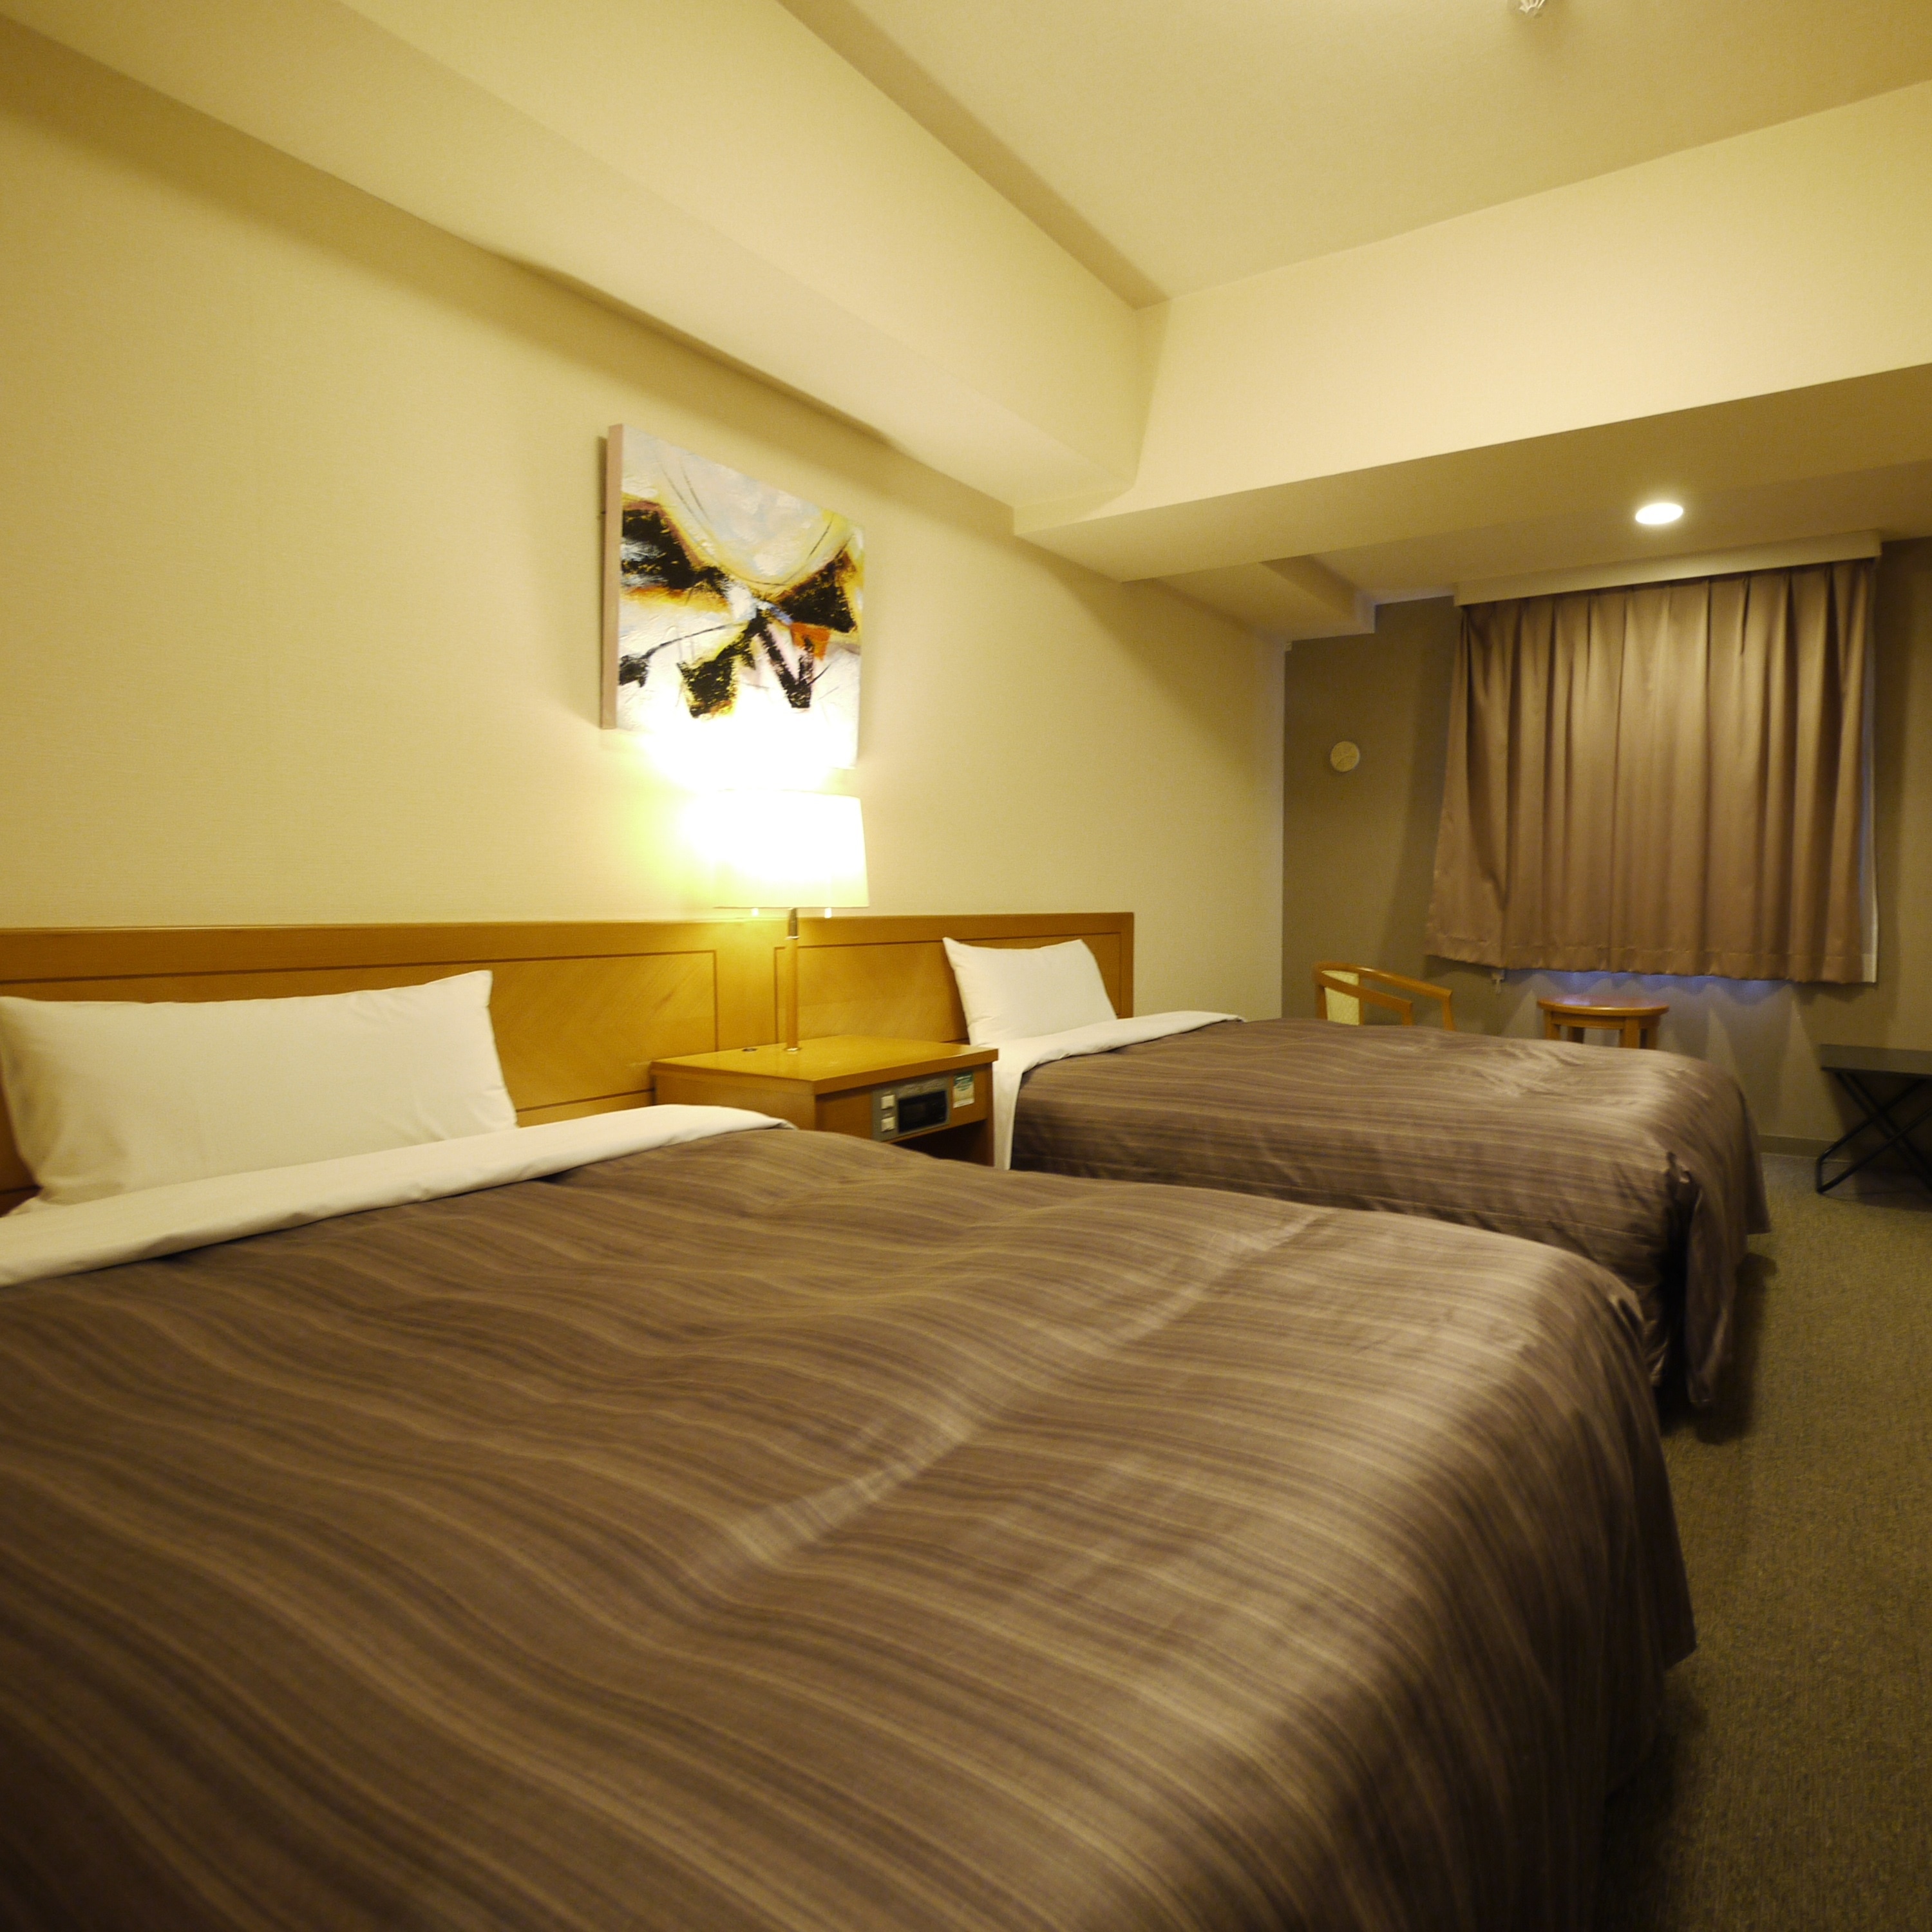 트윈 룸은 침대 폭 120cm의 싱글 침대 사양입니다만 넓은 객실에서 여유롭게 편히 쉴 수 있습니다.